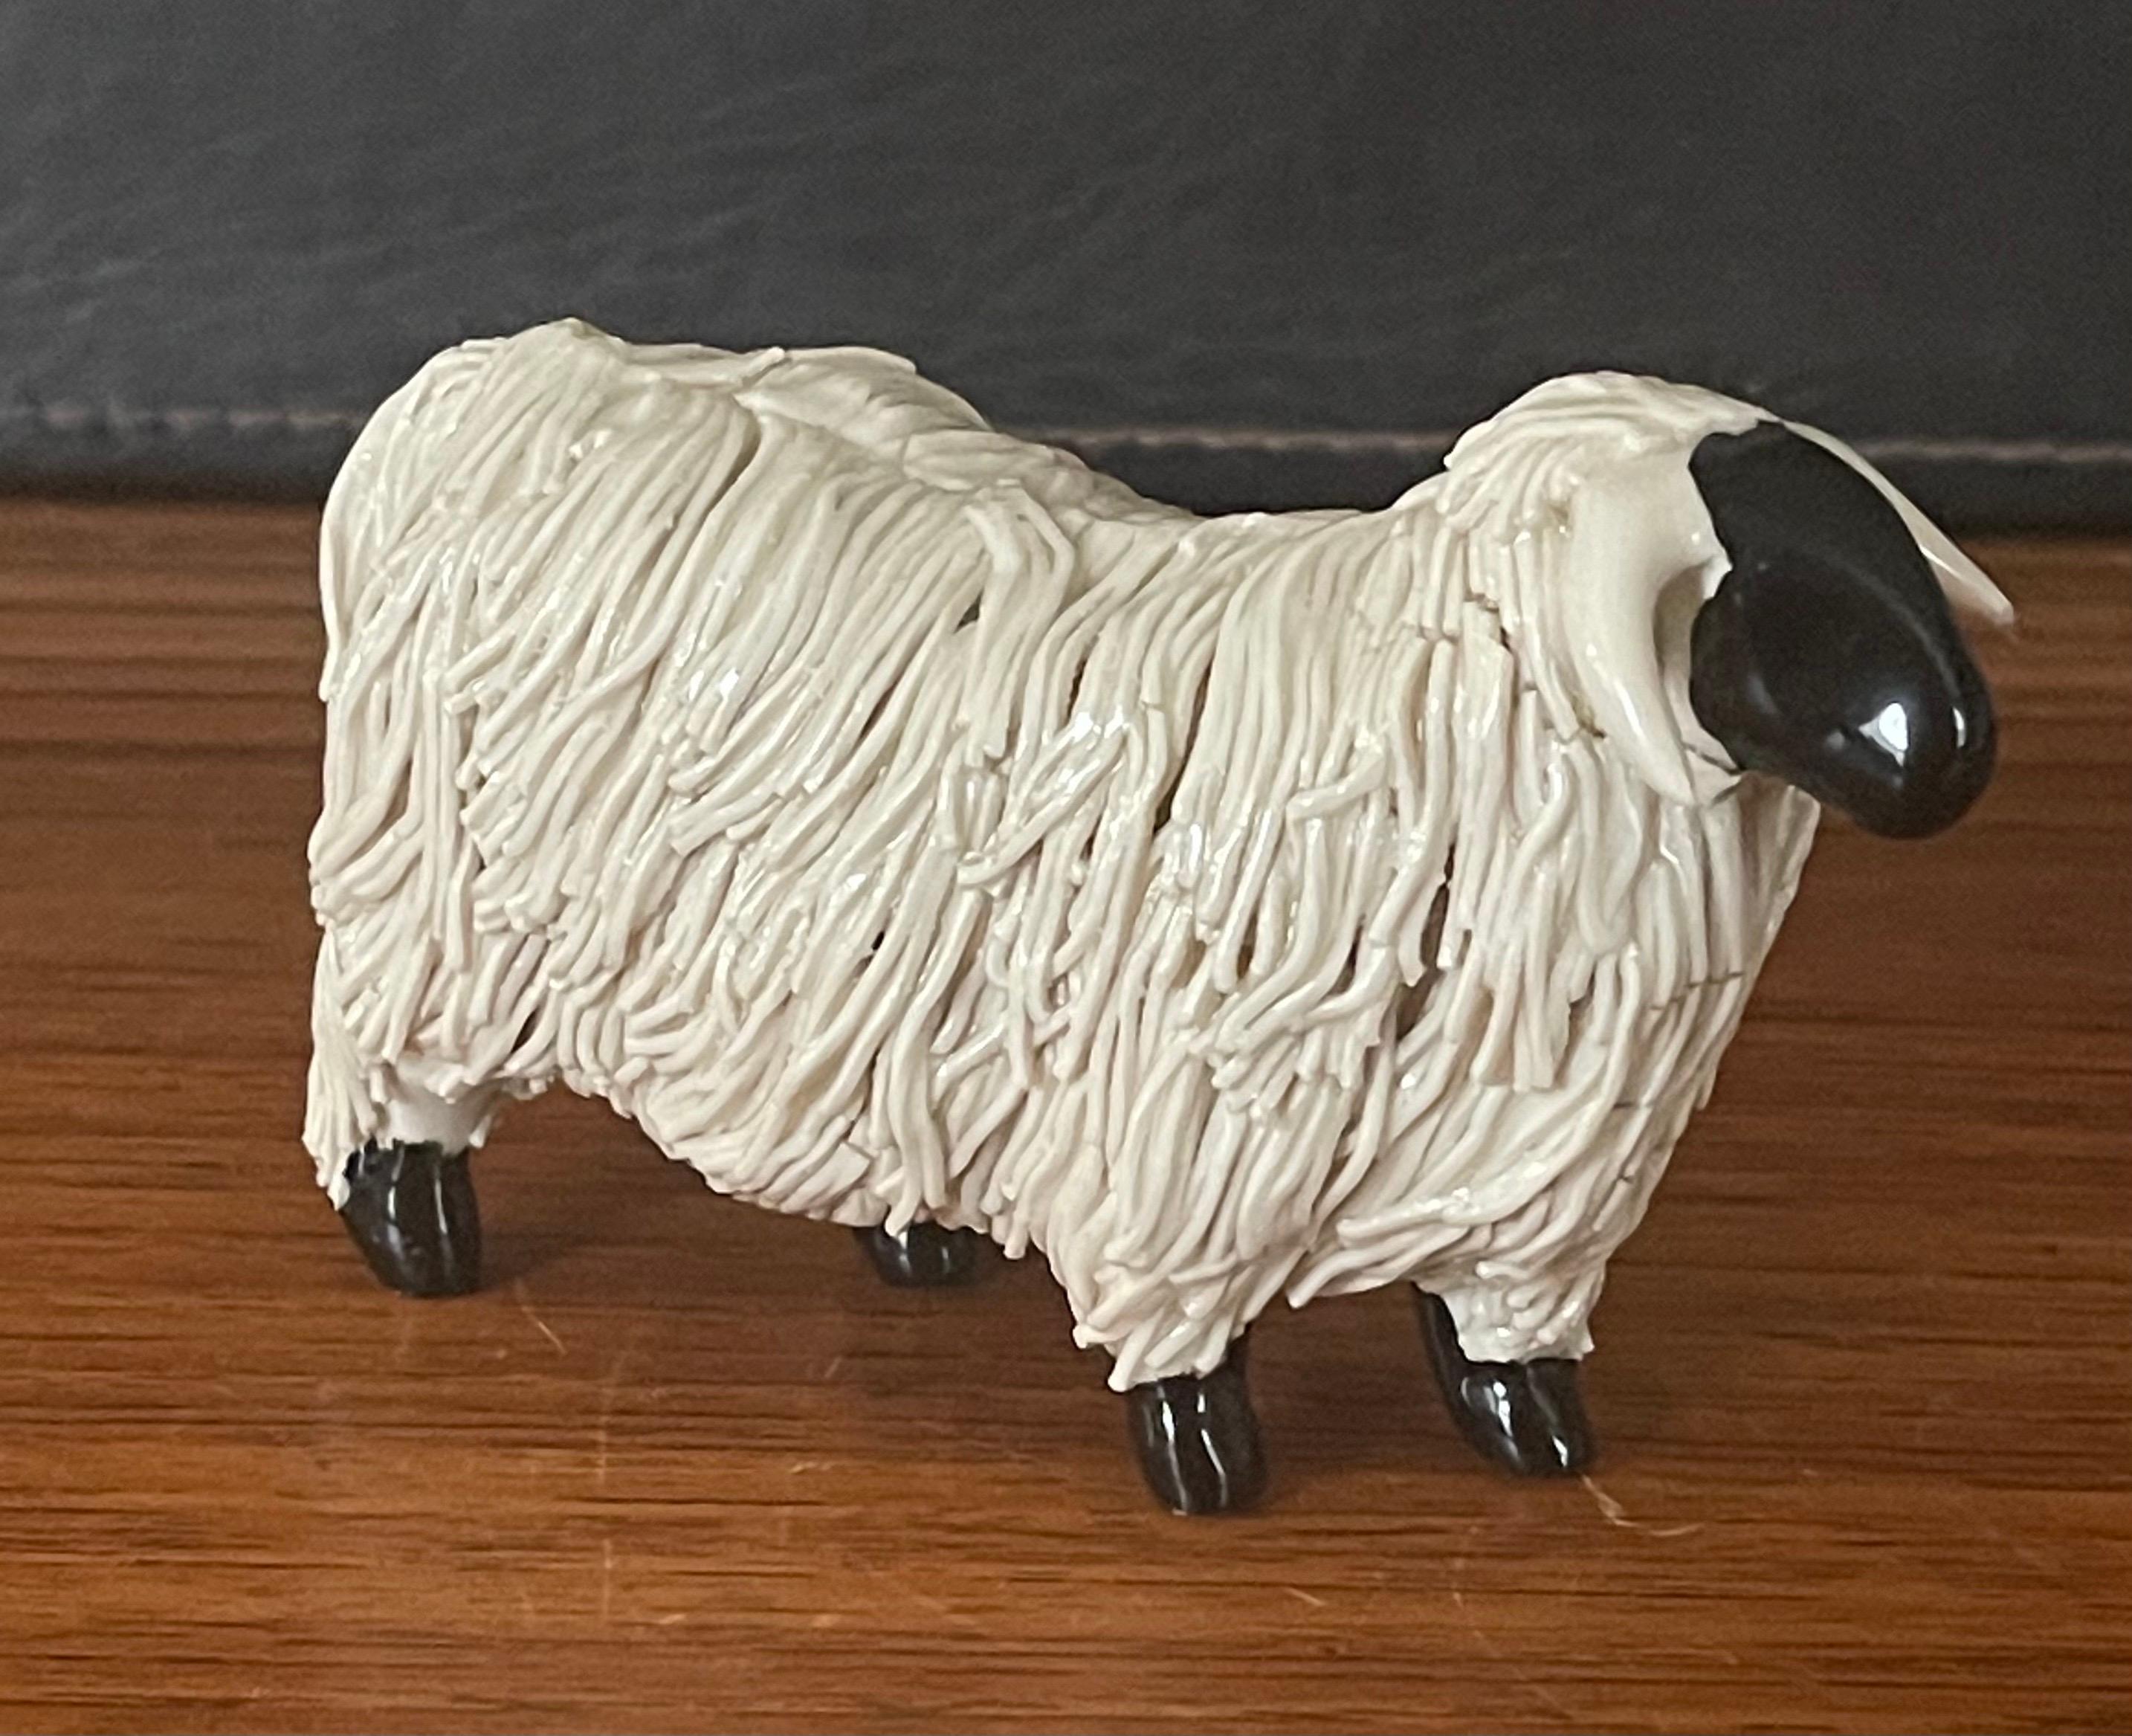 Pair of Midcentury Ceramic Rams / Sheep Figurines 1